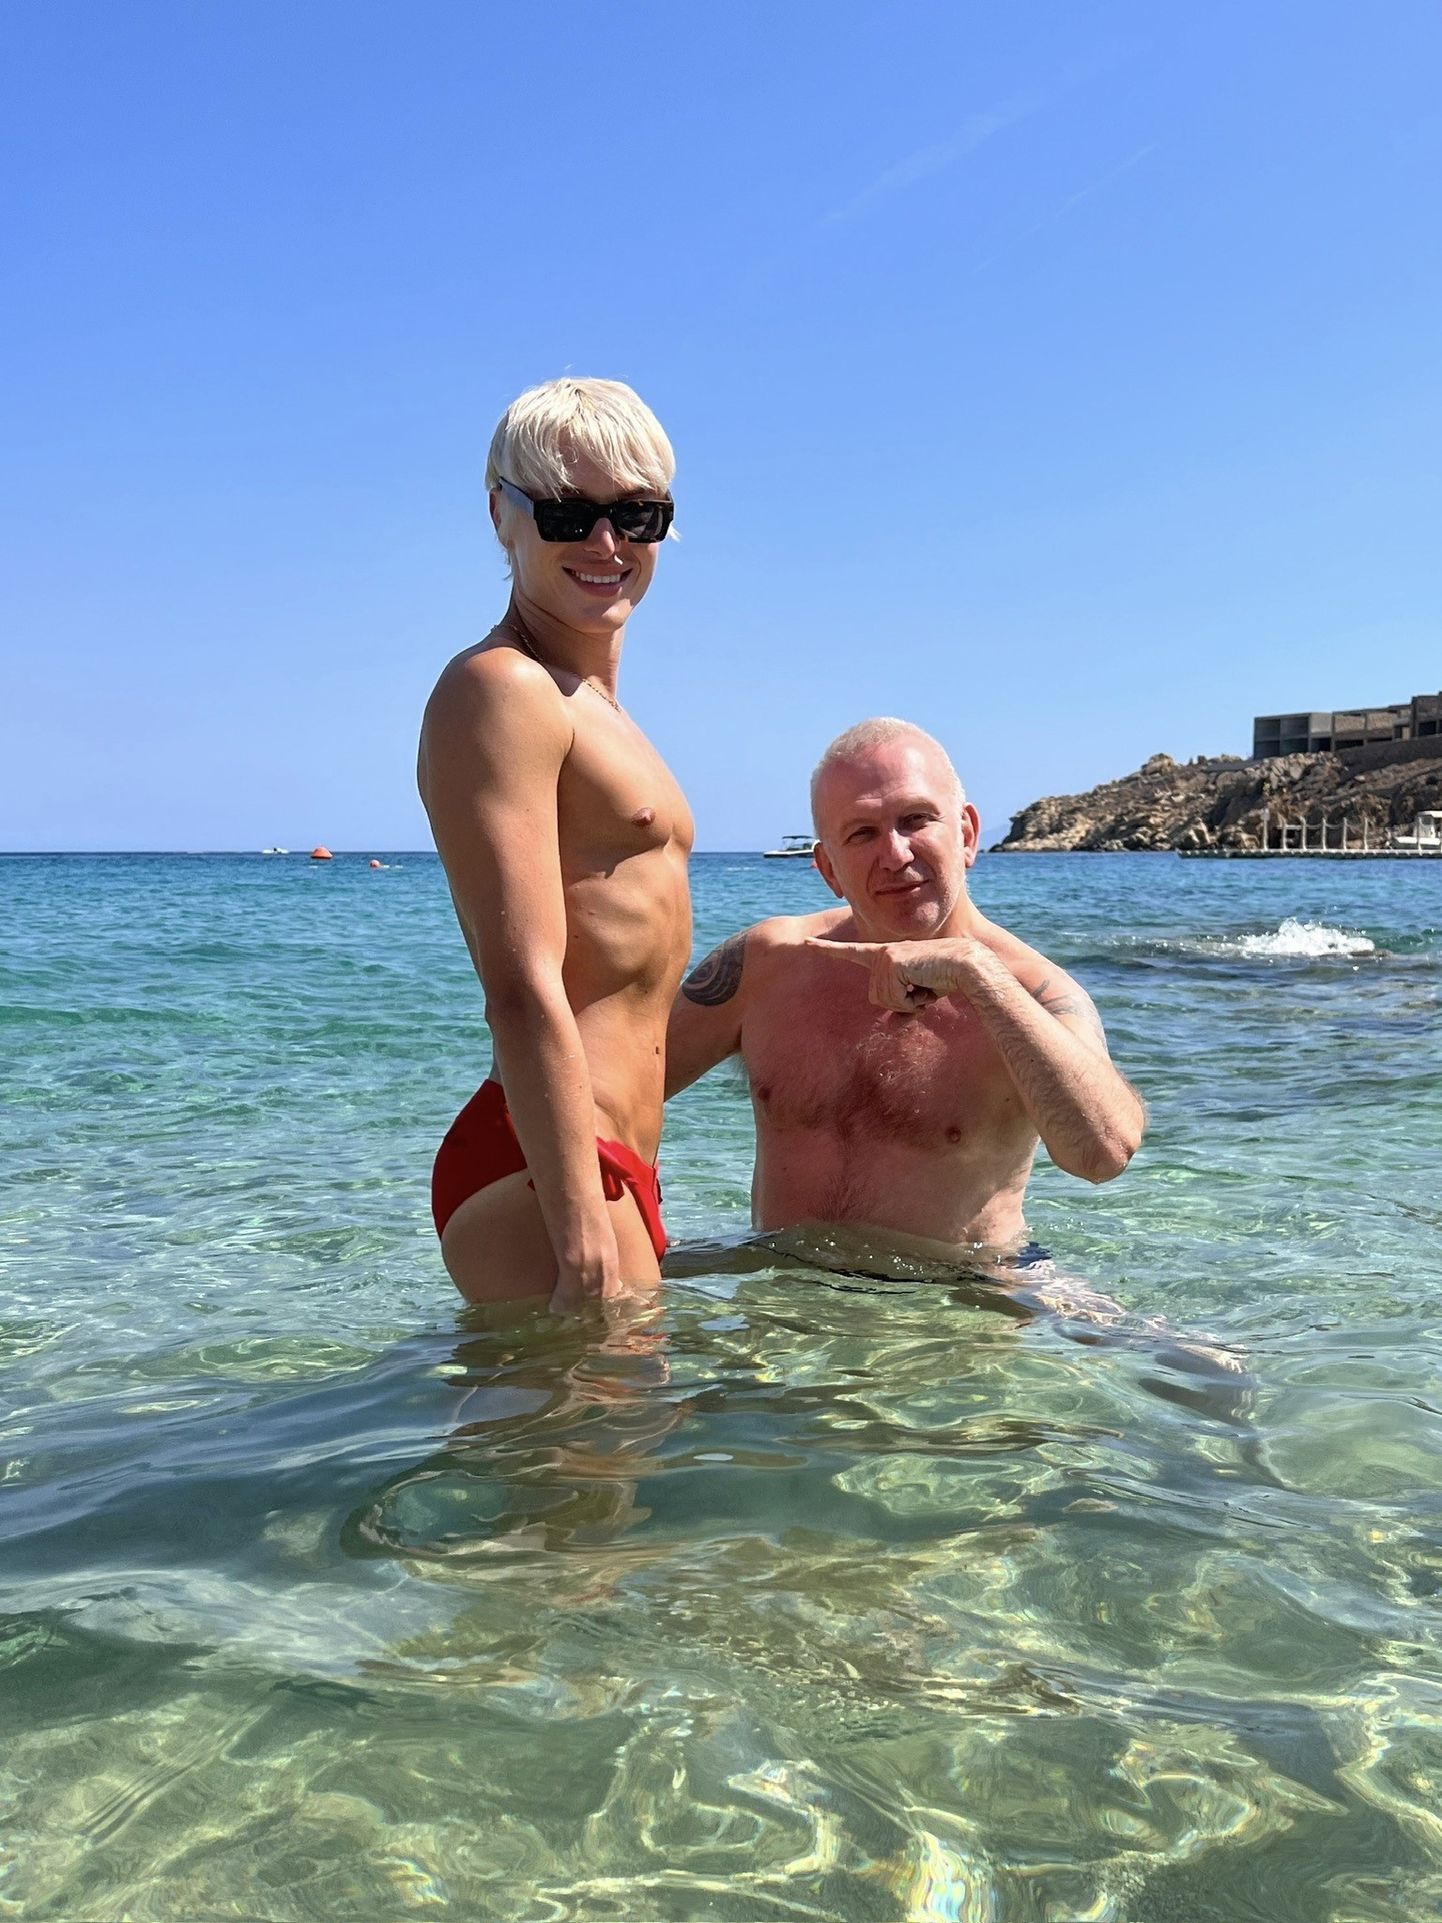 Финский создатель контента и звезда реалити-шоу Сергей Хильман случайно познакомился со всемирно известным модельером Жан-Полем Готье во время своего отпуска.